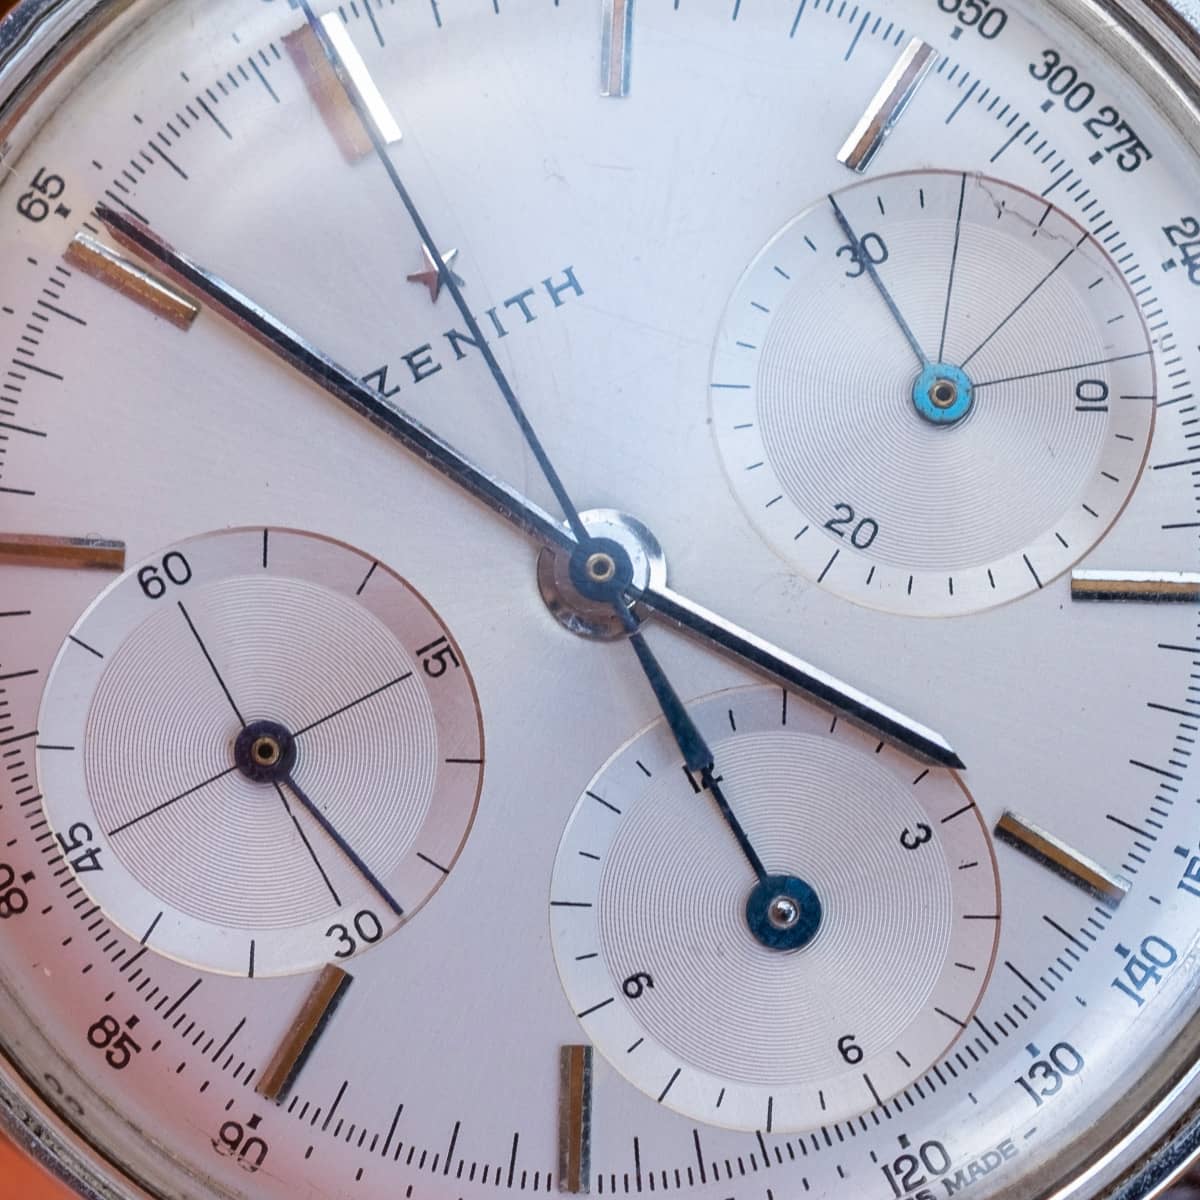 Zenith A273 chronograph dial